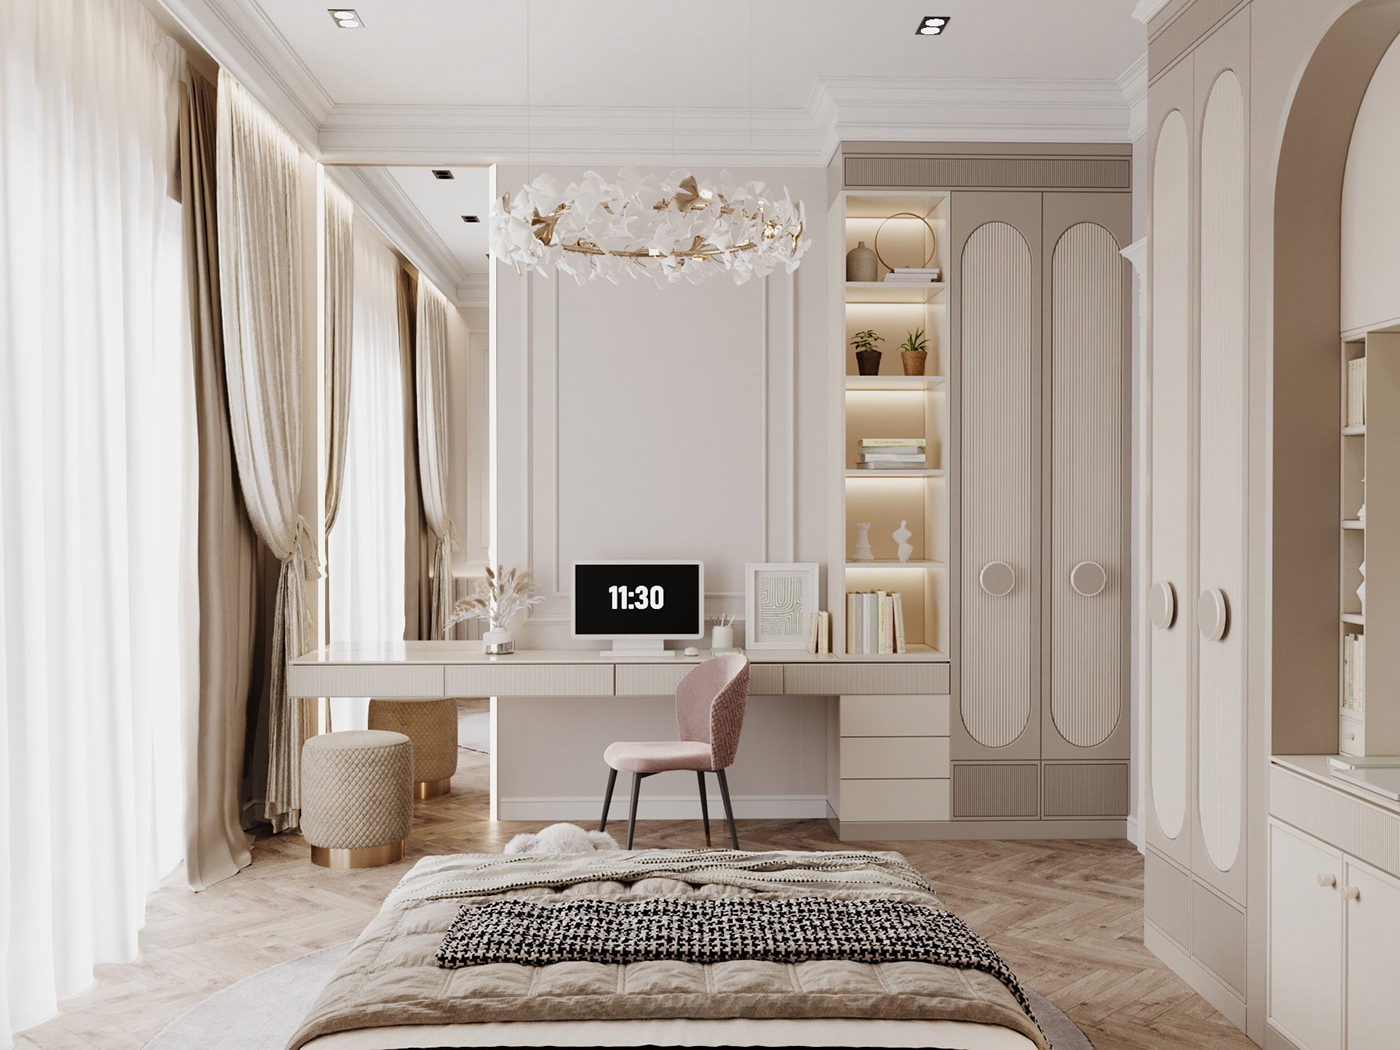 interior design  дизайн интерьера неоклассика   гостиная   кухня Санузел спальня детская интерьер bedroom